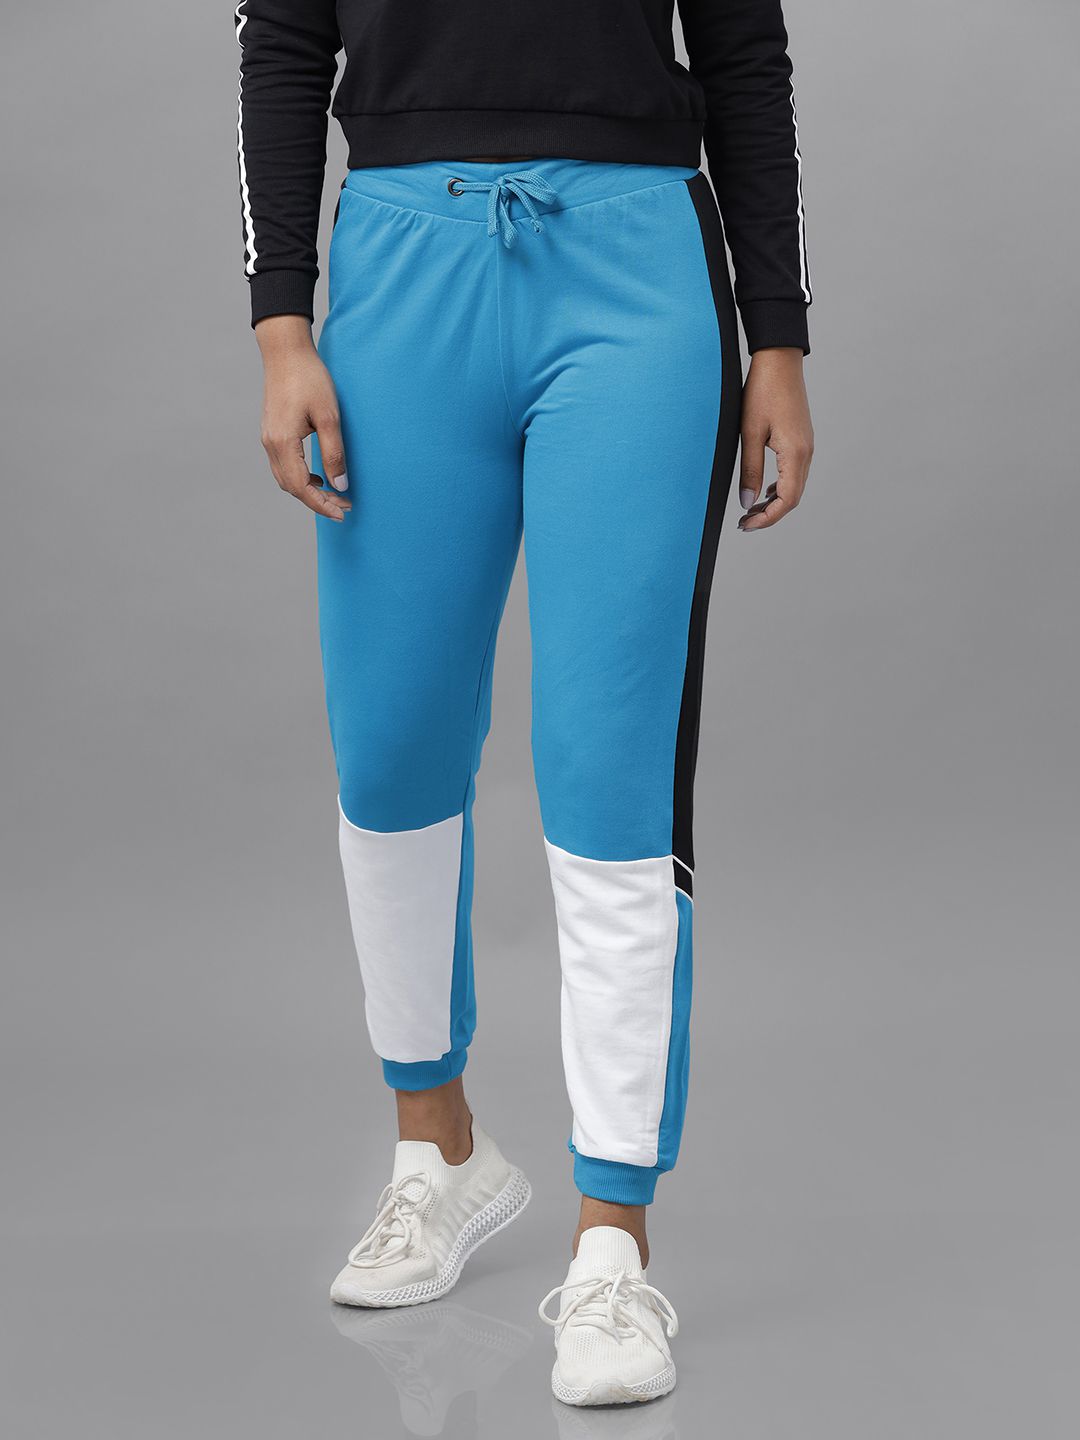     			De Moza - Blue Cotton Slim Women's Joggers ( Pack of 1 )